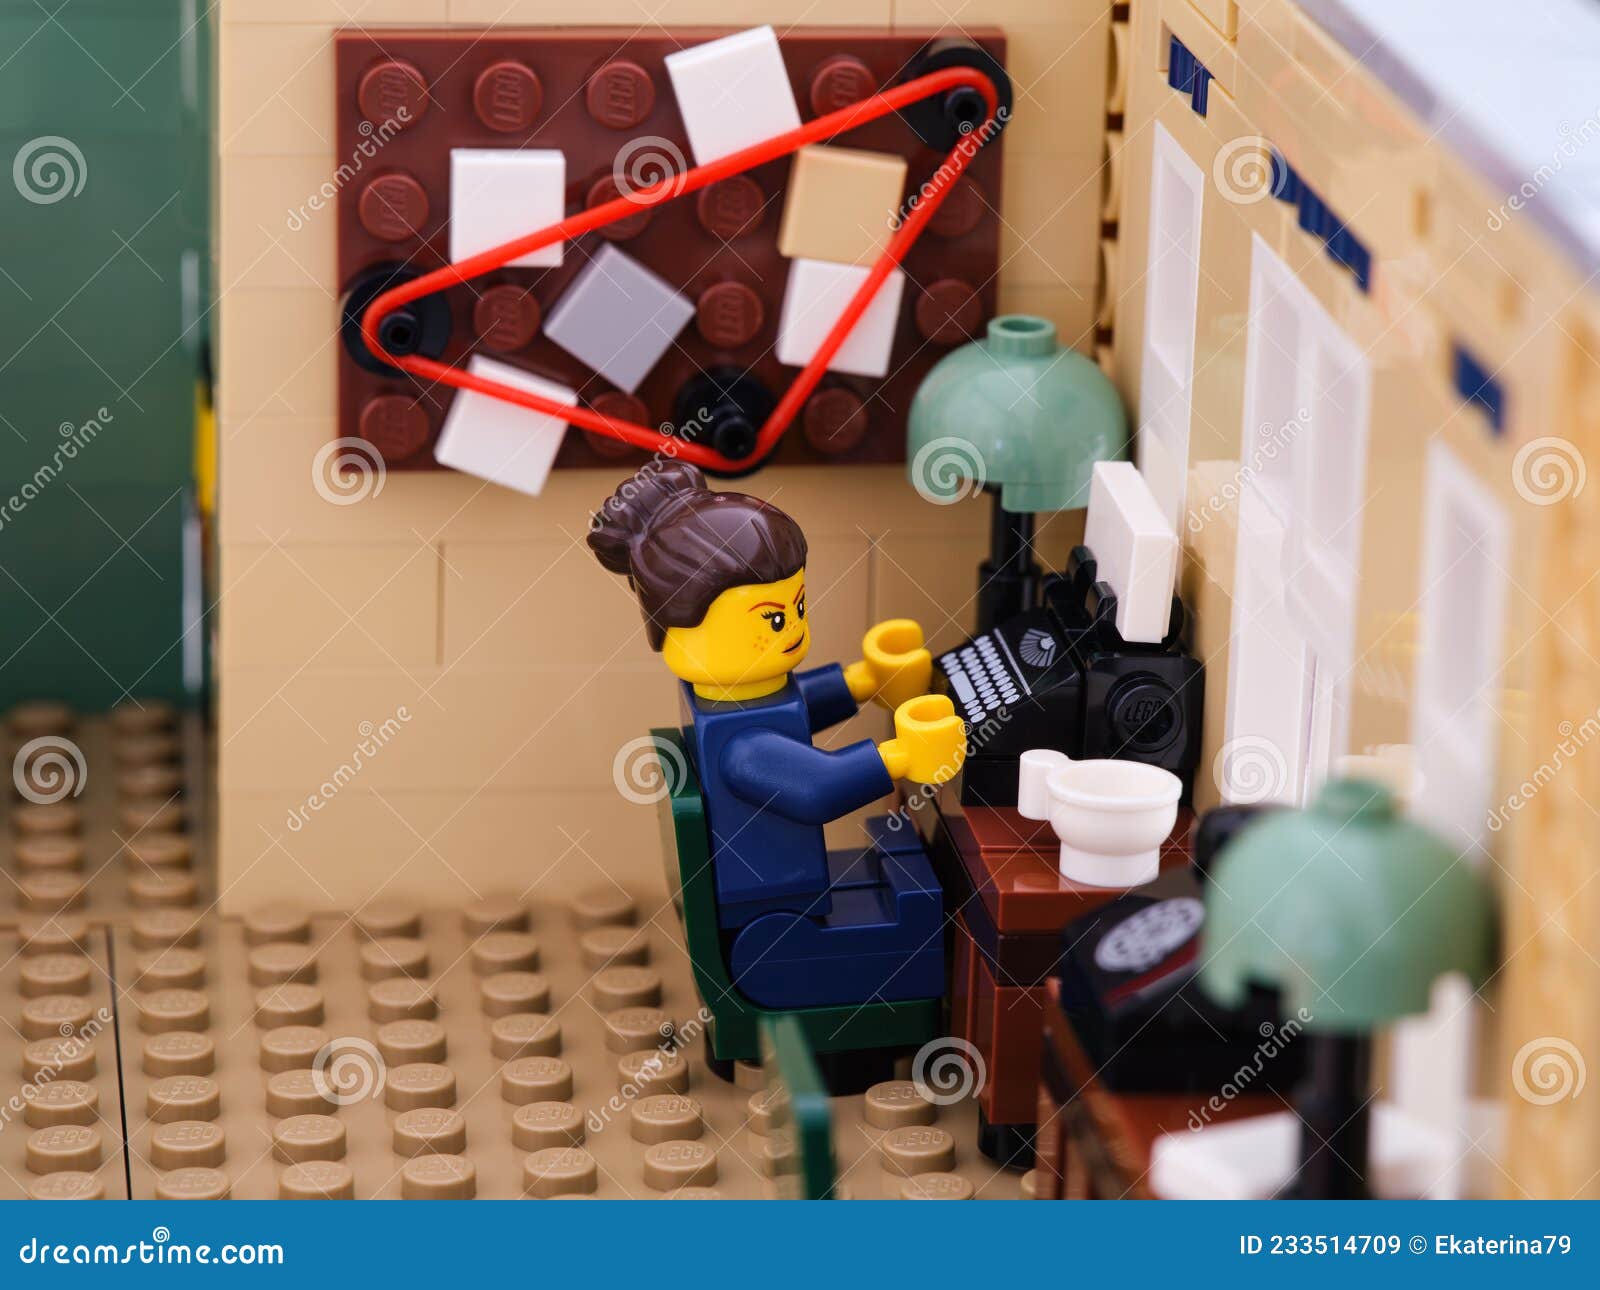 La Poliziotta Lego Sta Scrivendo Una Macchina Da Scrivere Nella Stazione Di  Polizia Immagine Stock Editoriale - Immagine di tabella, editoriale:  233514709